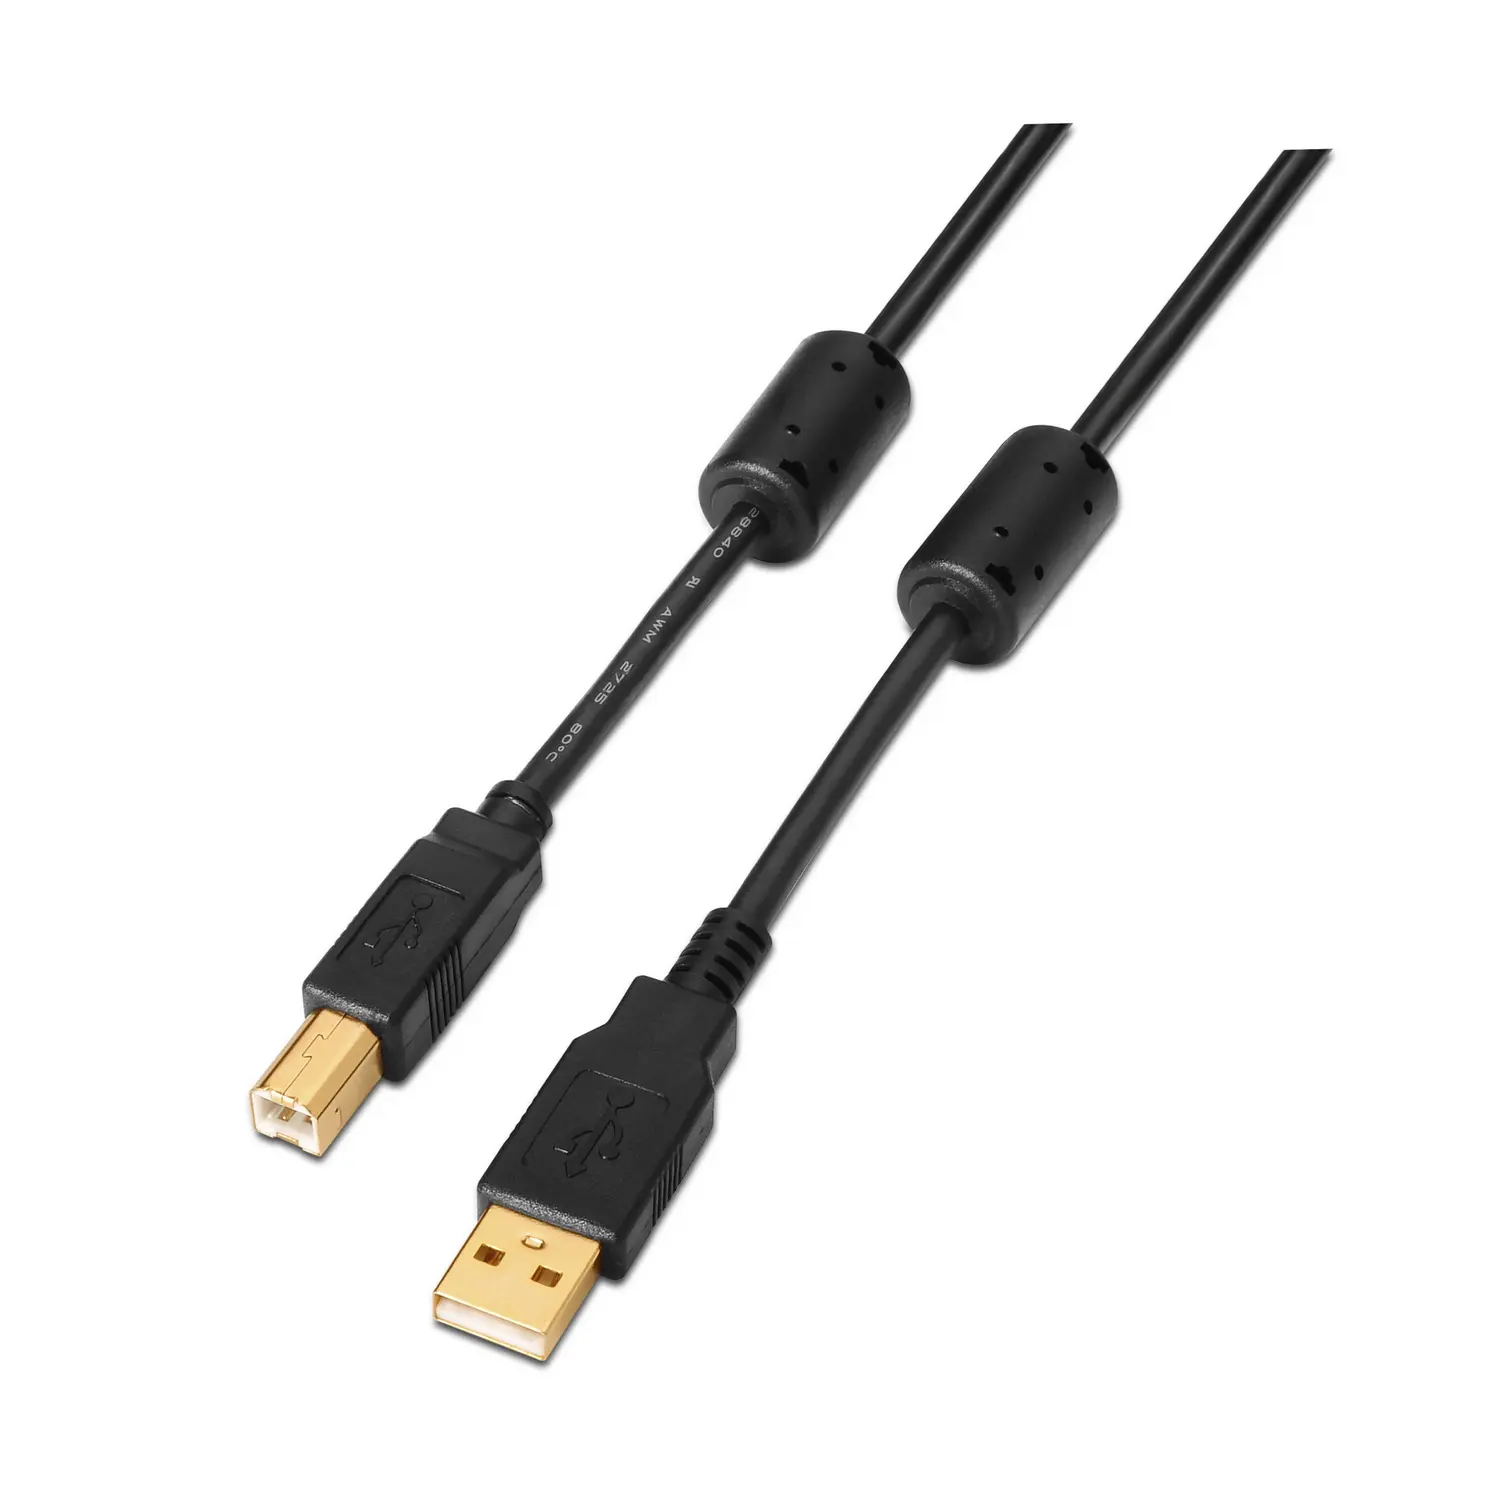 Aisens Cable USB 2.0 Impresora Super Alta Calidad con Ferrita - Tipo A Macho a Tipo B Macho - 3.0m -